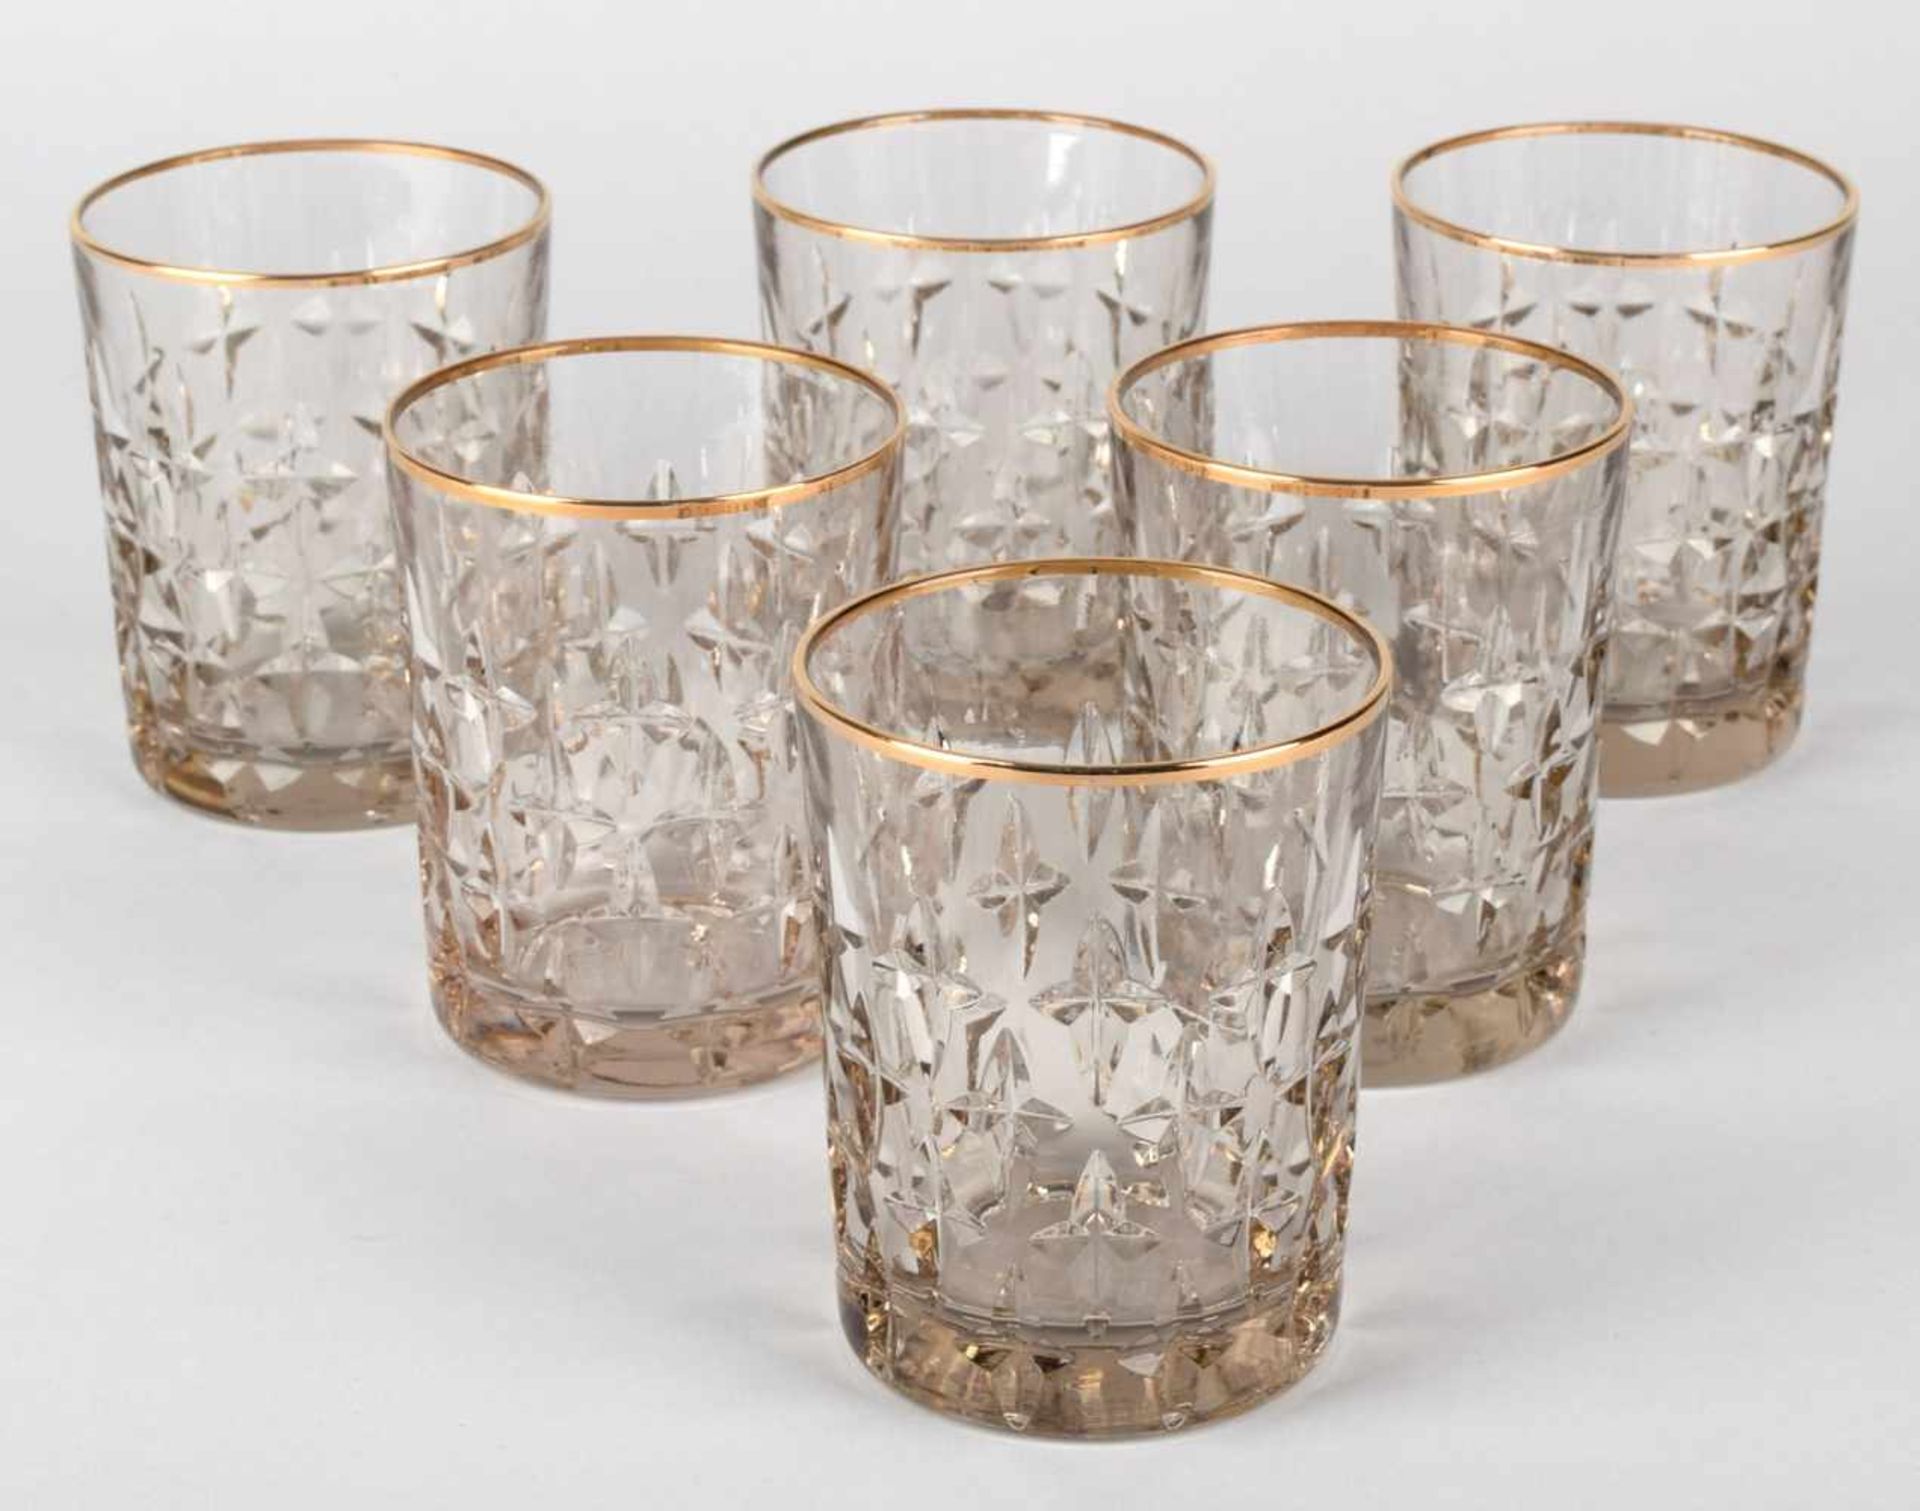 Sechs Whiskeygläser leicht rauchiges Glas in Zylinderform, mehrreihiger Sterndekor, Goldrand, - Bild 2 aus 2